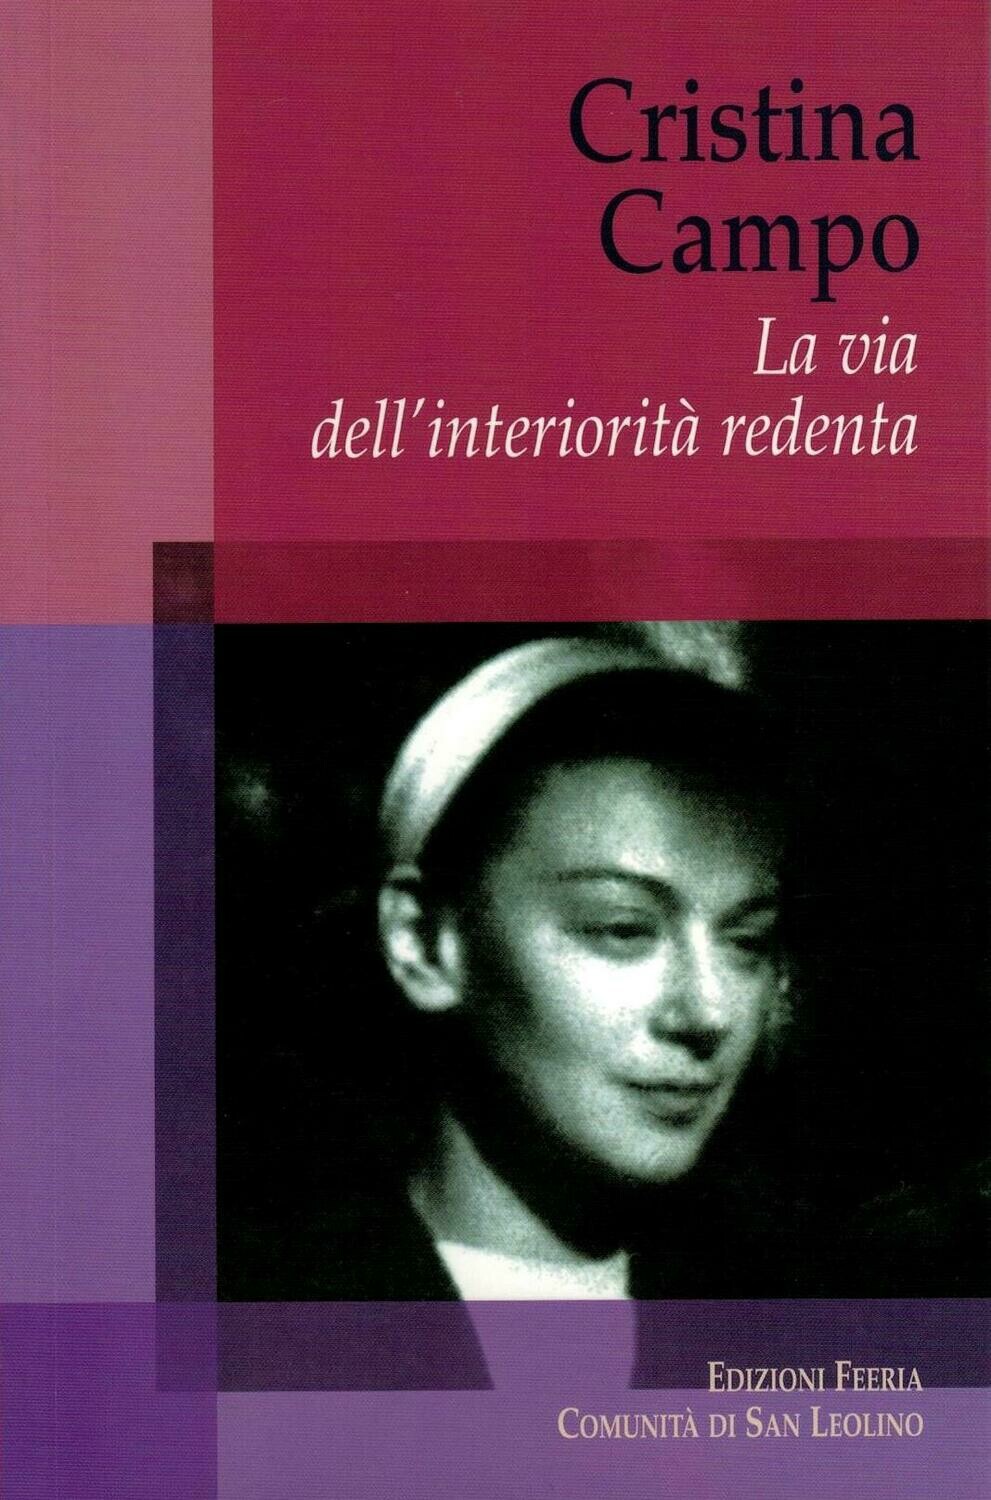 Cristina Campo - La via dell&#39;interiorità redenta (Autori vari)